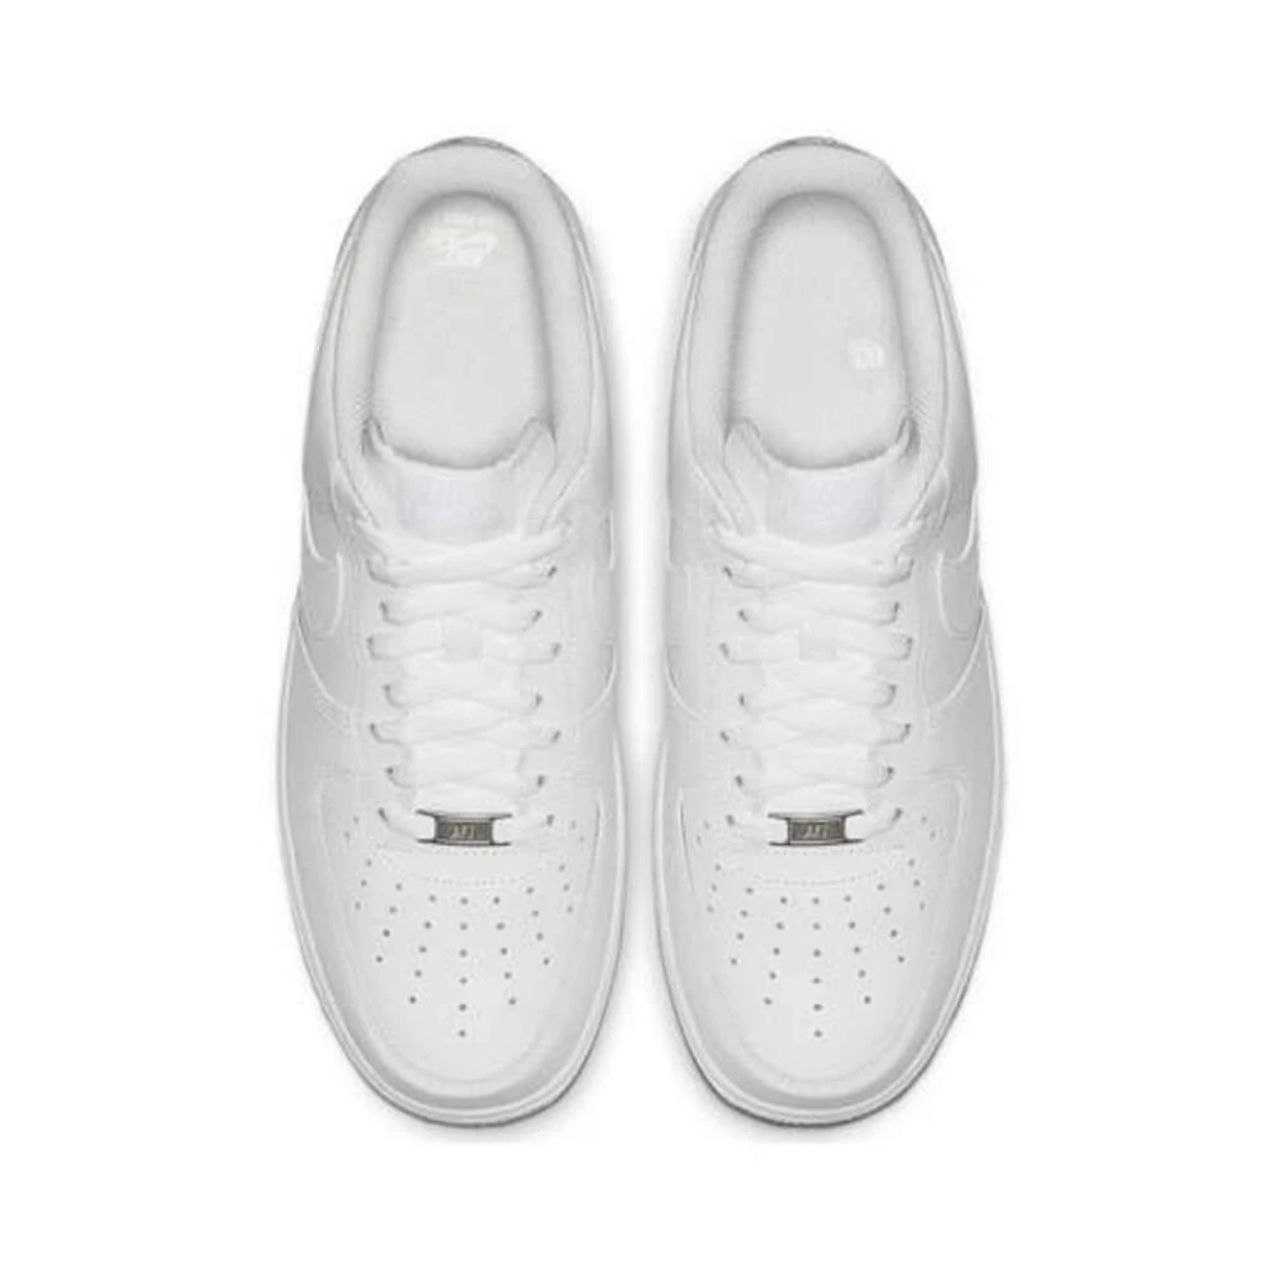 "Weiße Leder Low Top Sneakers" Nike